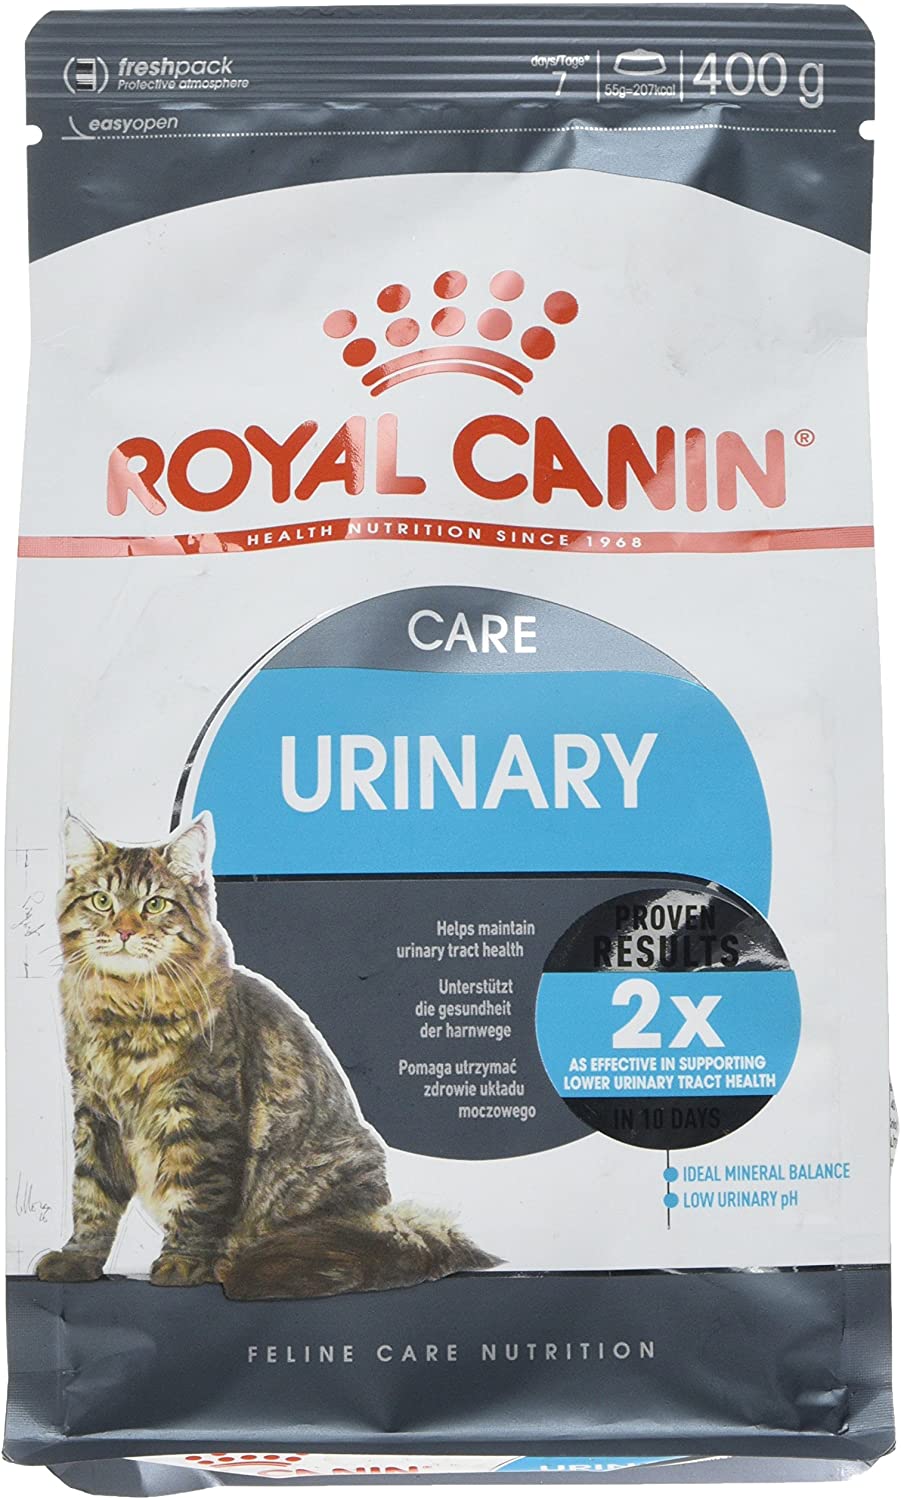  Royal Canin Comida para gatos Urinary Care 10 Kg 